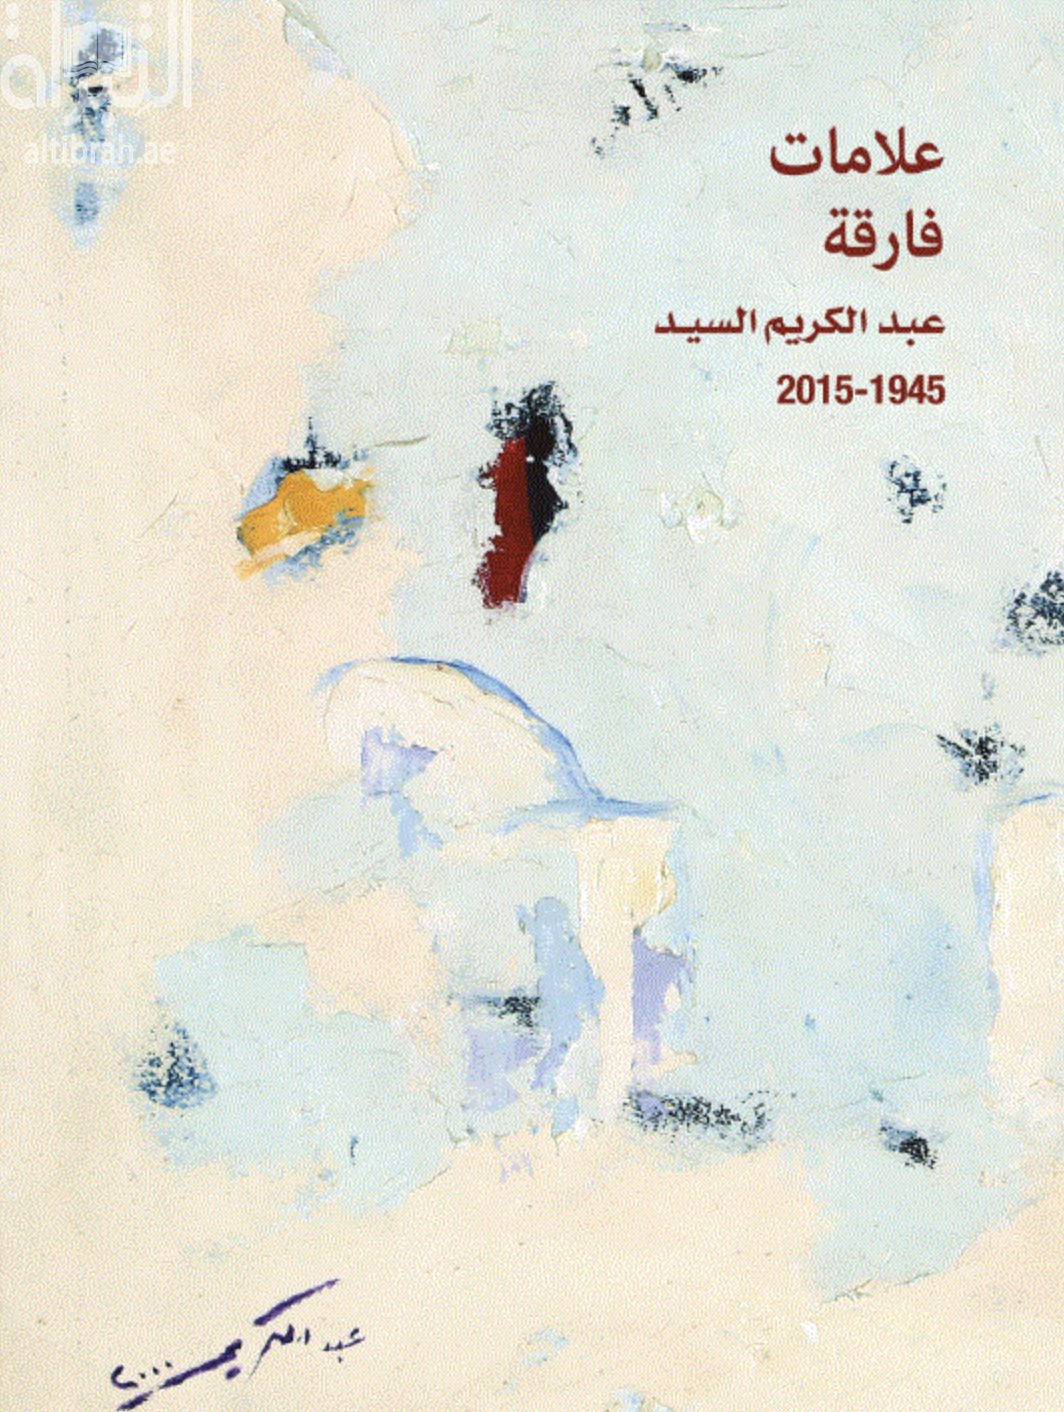 غلاف كتاب علامات فارقة : عبدالكريم السيد 1945 - 2015